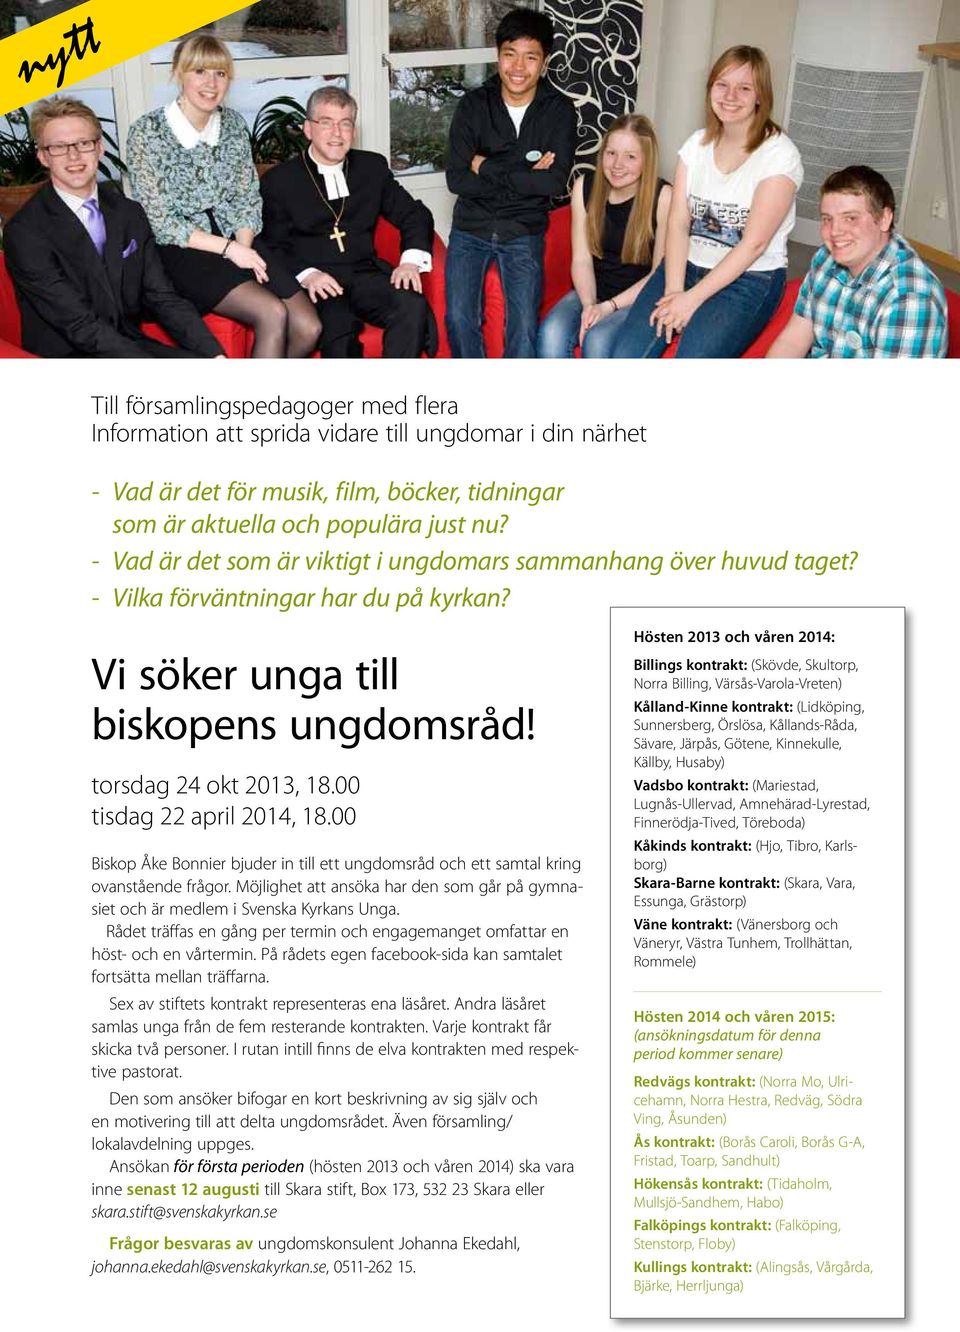 00 tisdag 22 april 2014, 18.00 Biskop Åke Bonnier bjuder in till ett ungdomsråd och ett samtal kring ovanstående frågor.